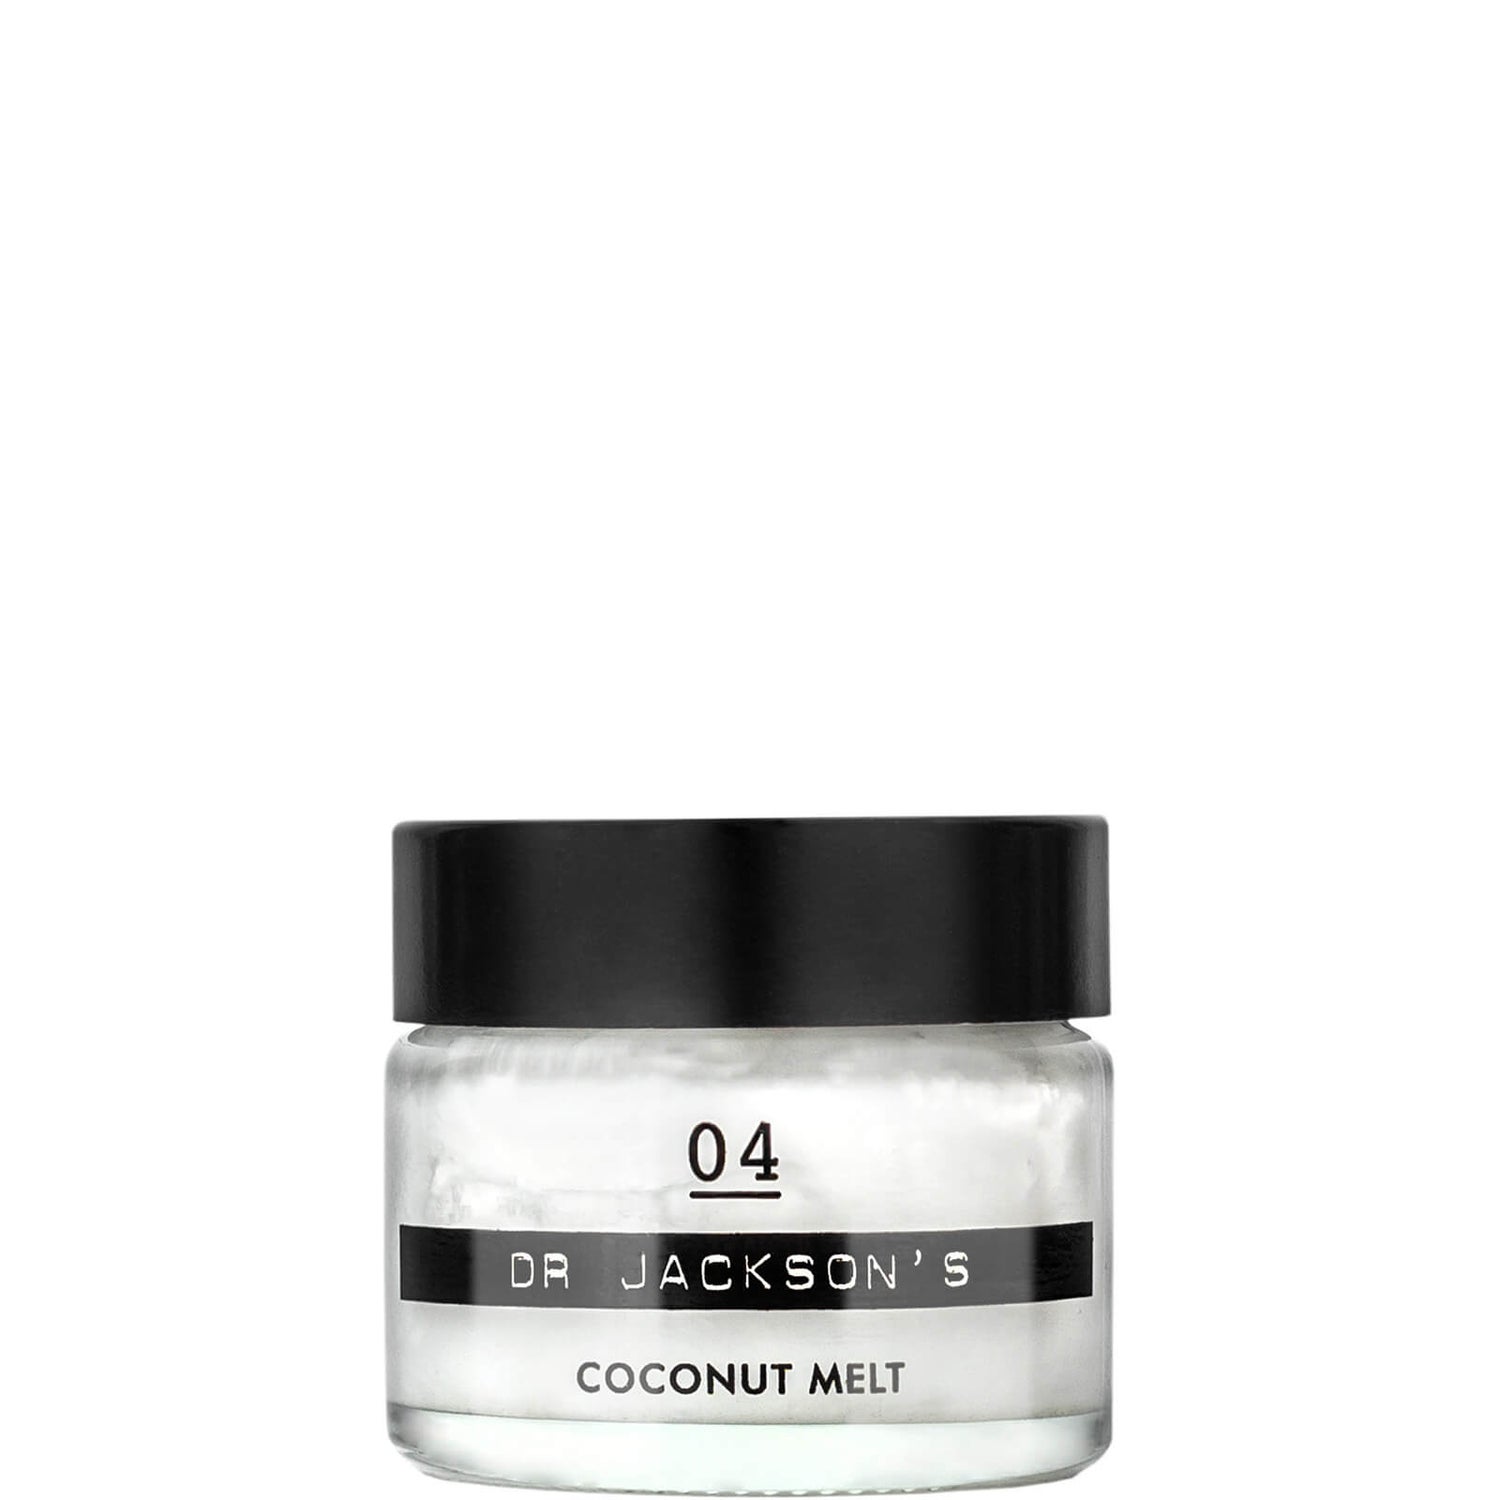 Универсальный бальзам для волос и тела Dr. Jackson's Natural Products, 04 Coconut Melt, 15 мл